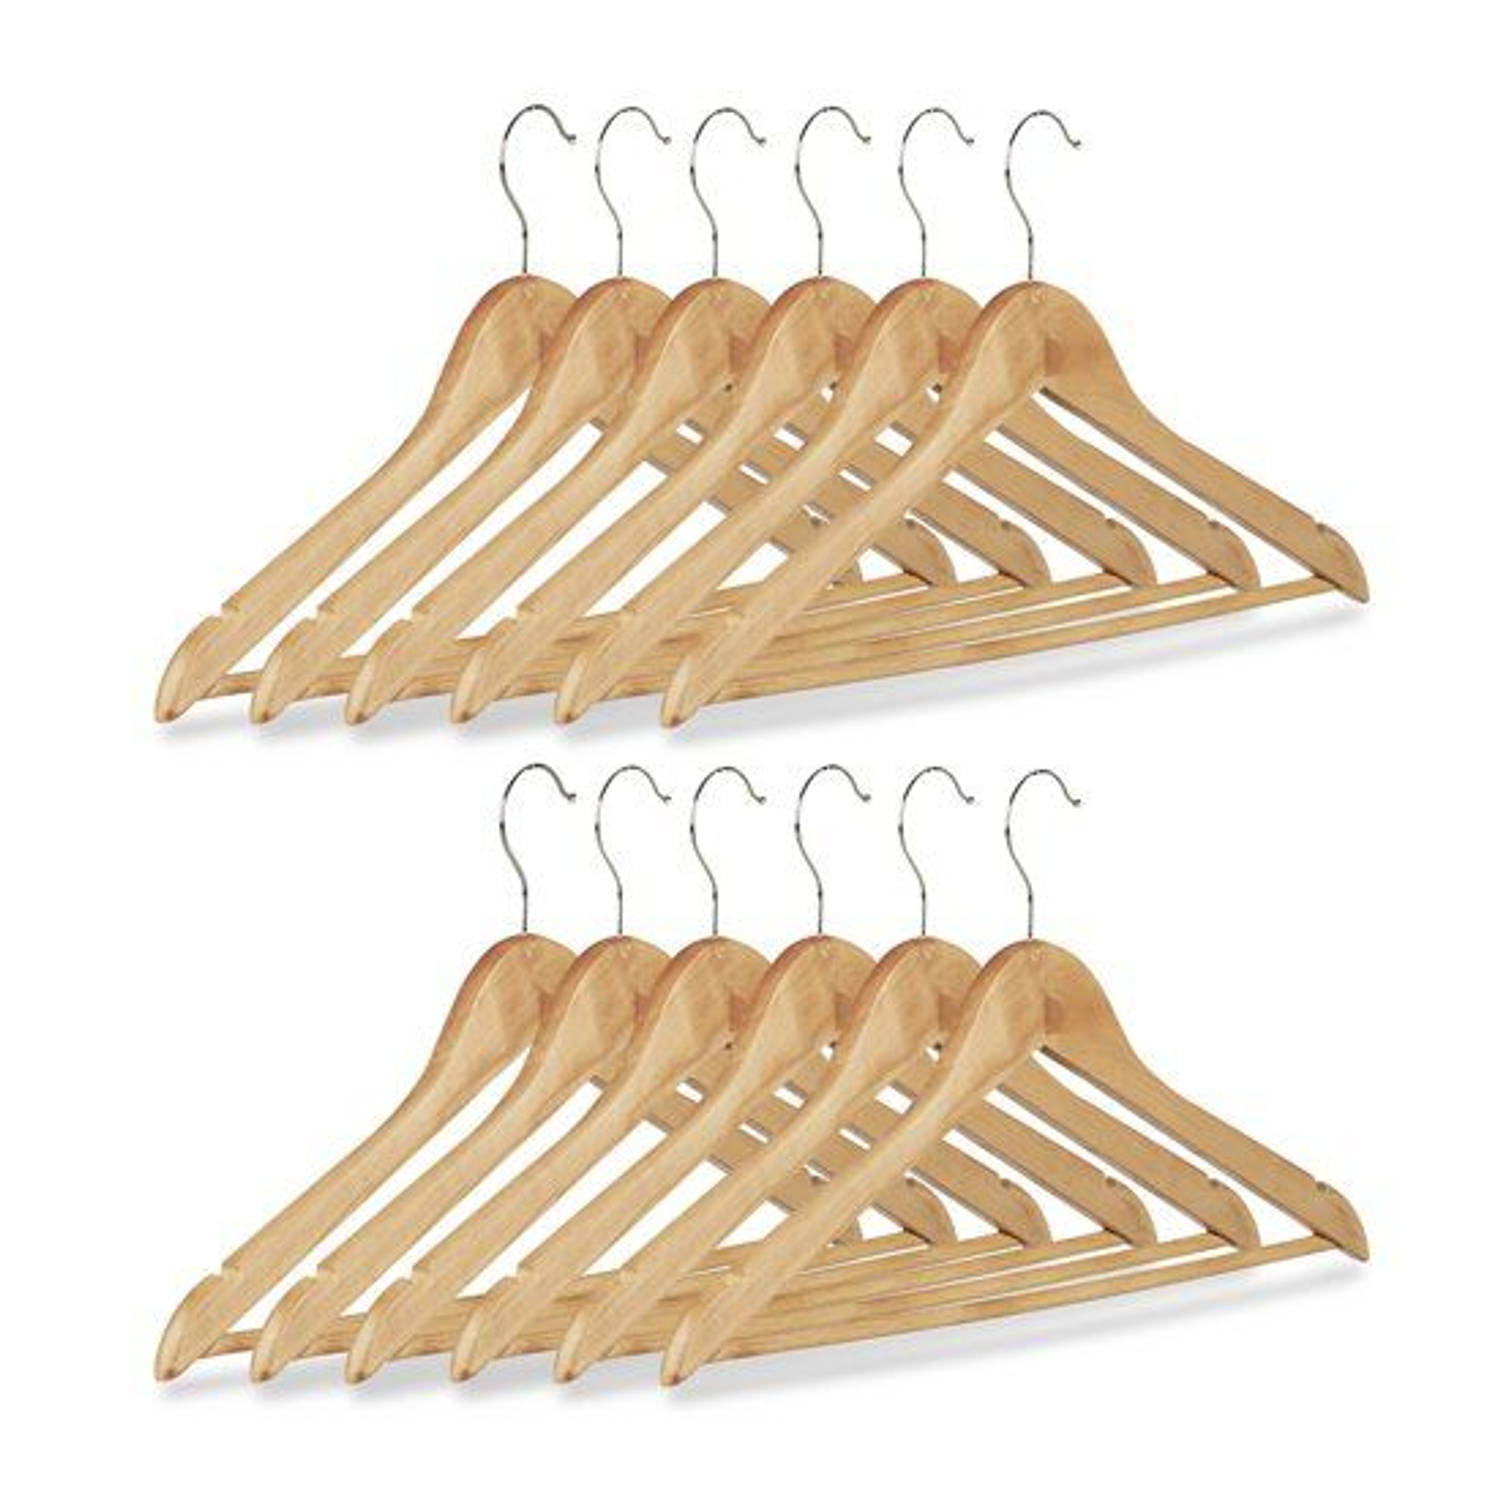 Kledinghangers Set van 12 Stuks - kledinghangerset hout -